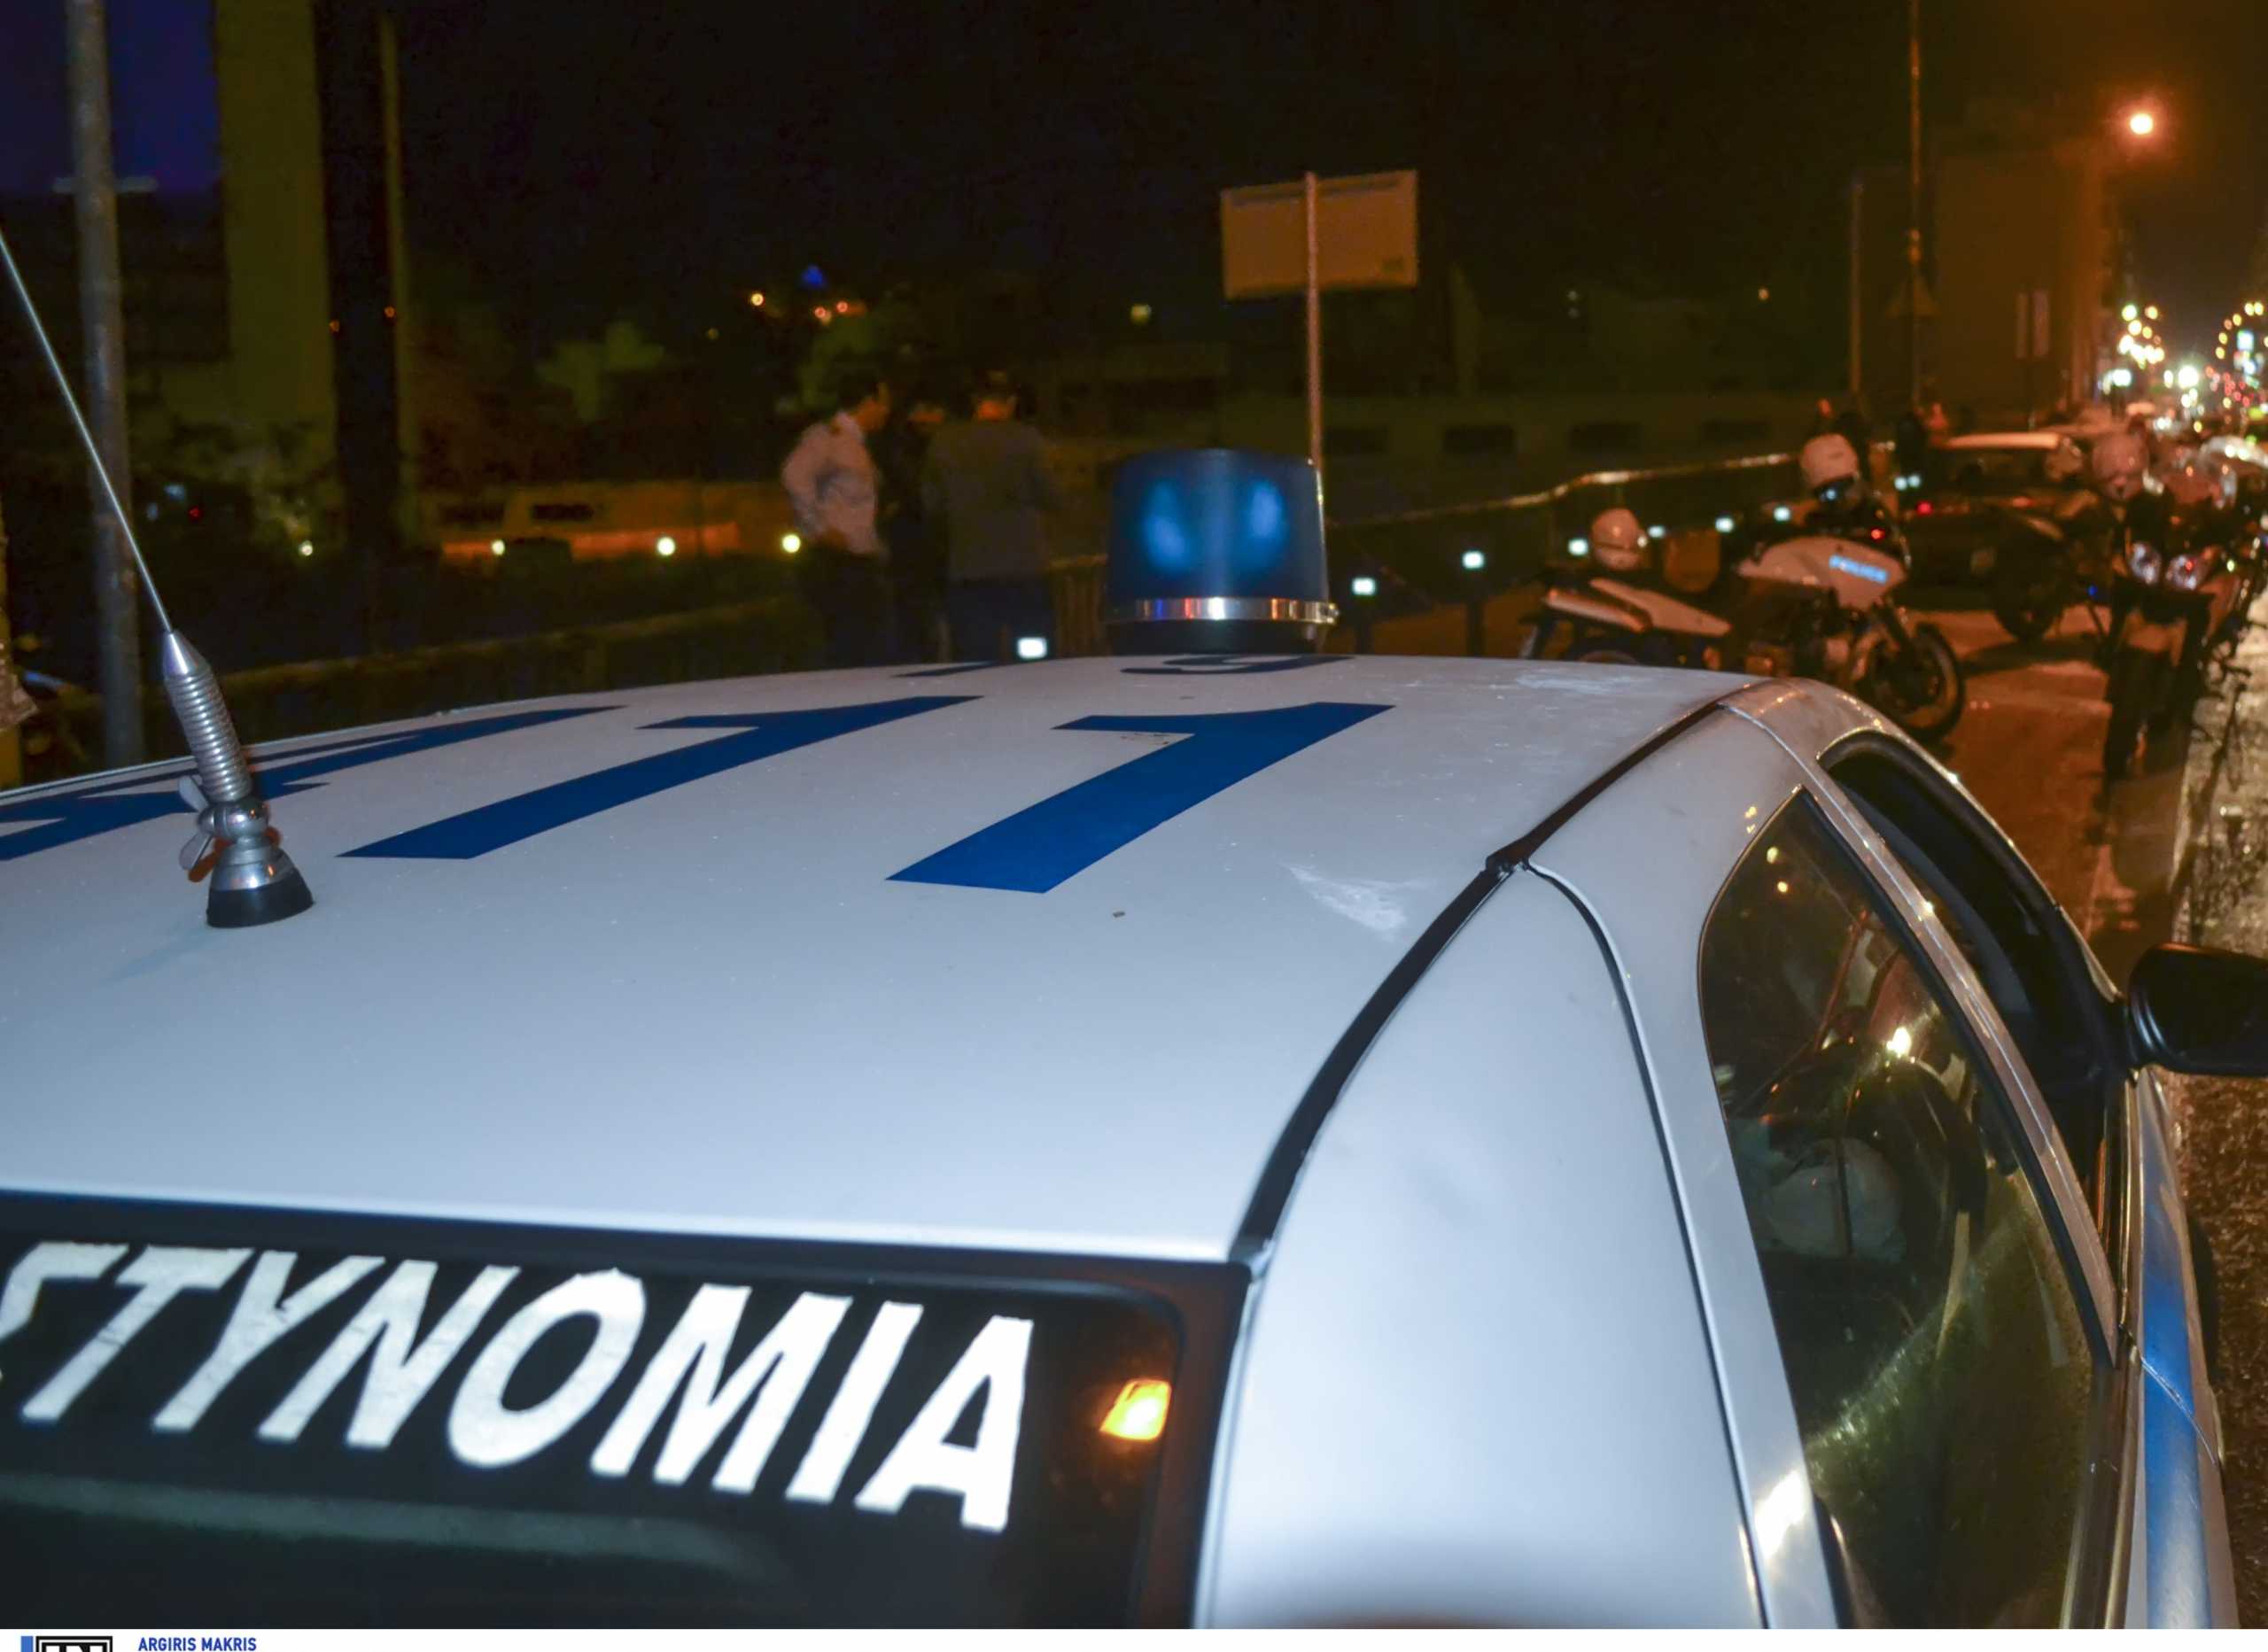 Ρέθυμνο: Έπεσαν ξανά μπαλωθιές σε γλέντι – Καταγγελίες από κατοίκους και αιχμές για την αστυνομία